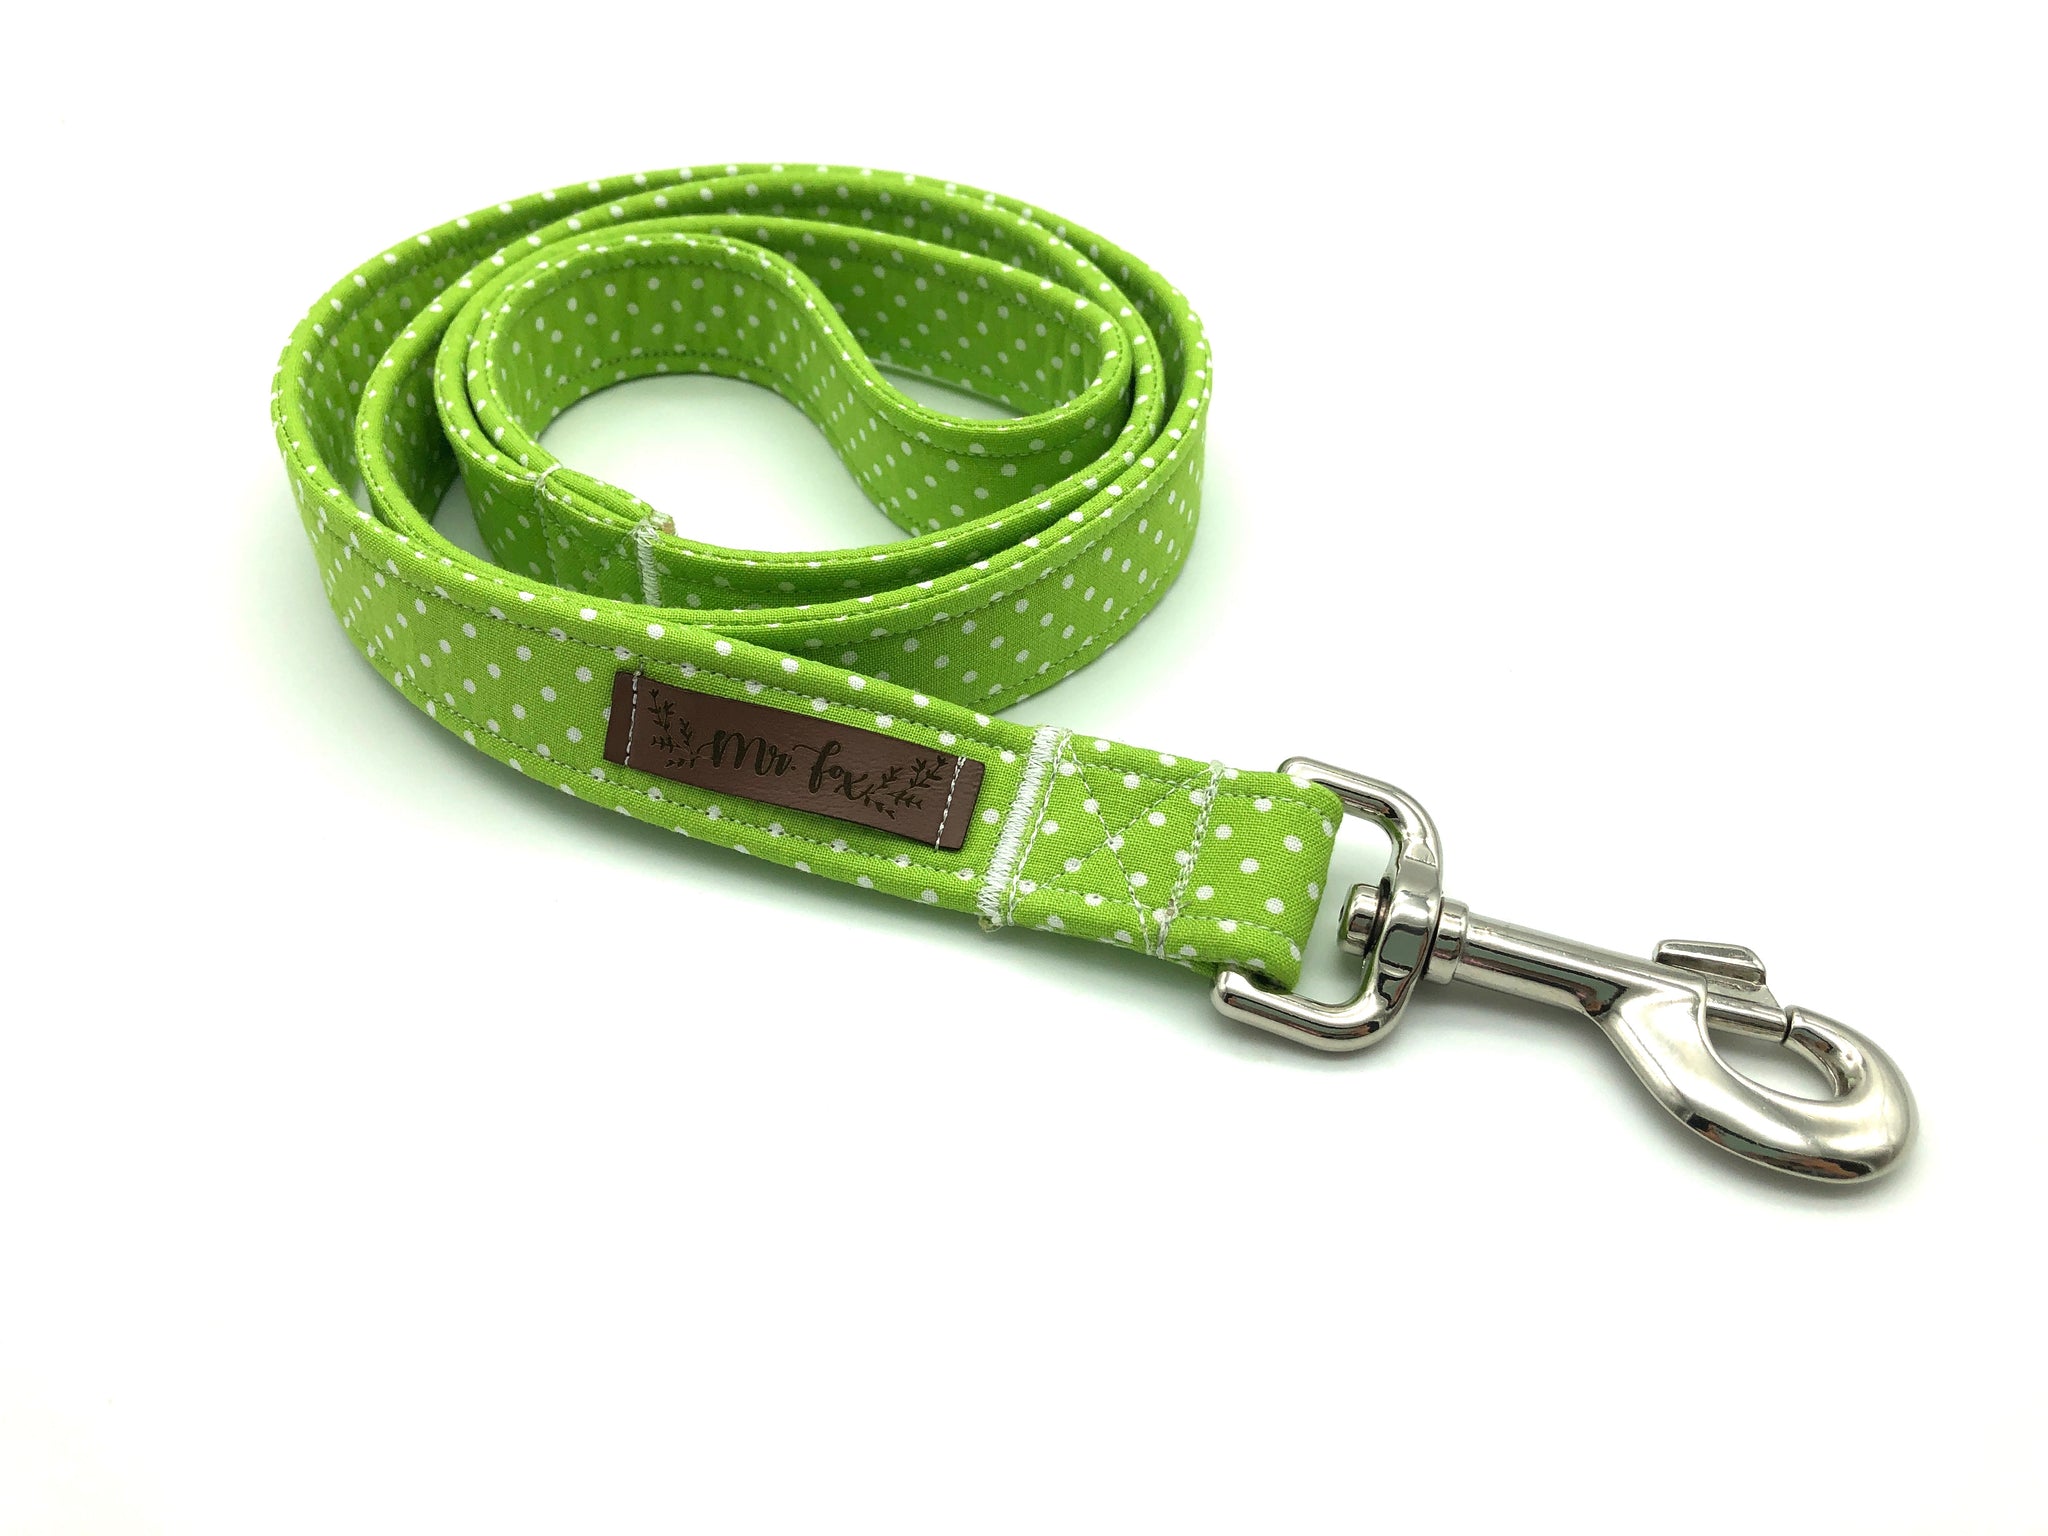 "Apple Green Polkadot" dog leash